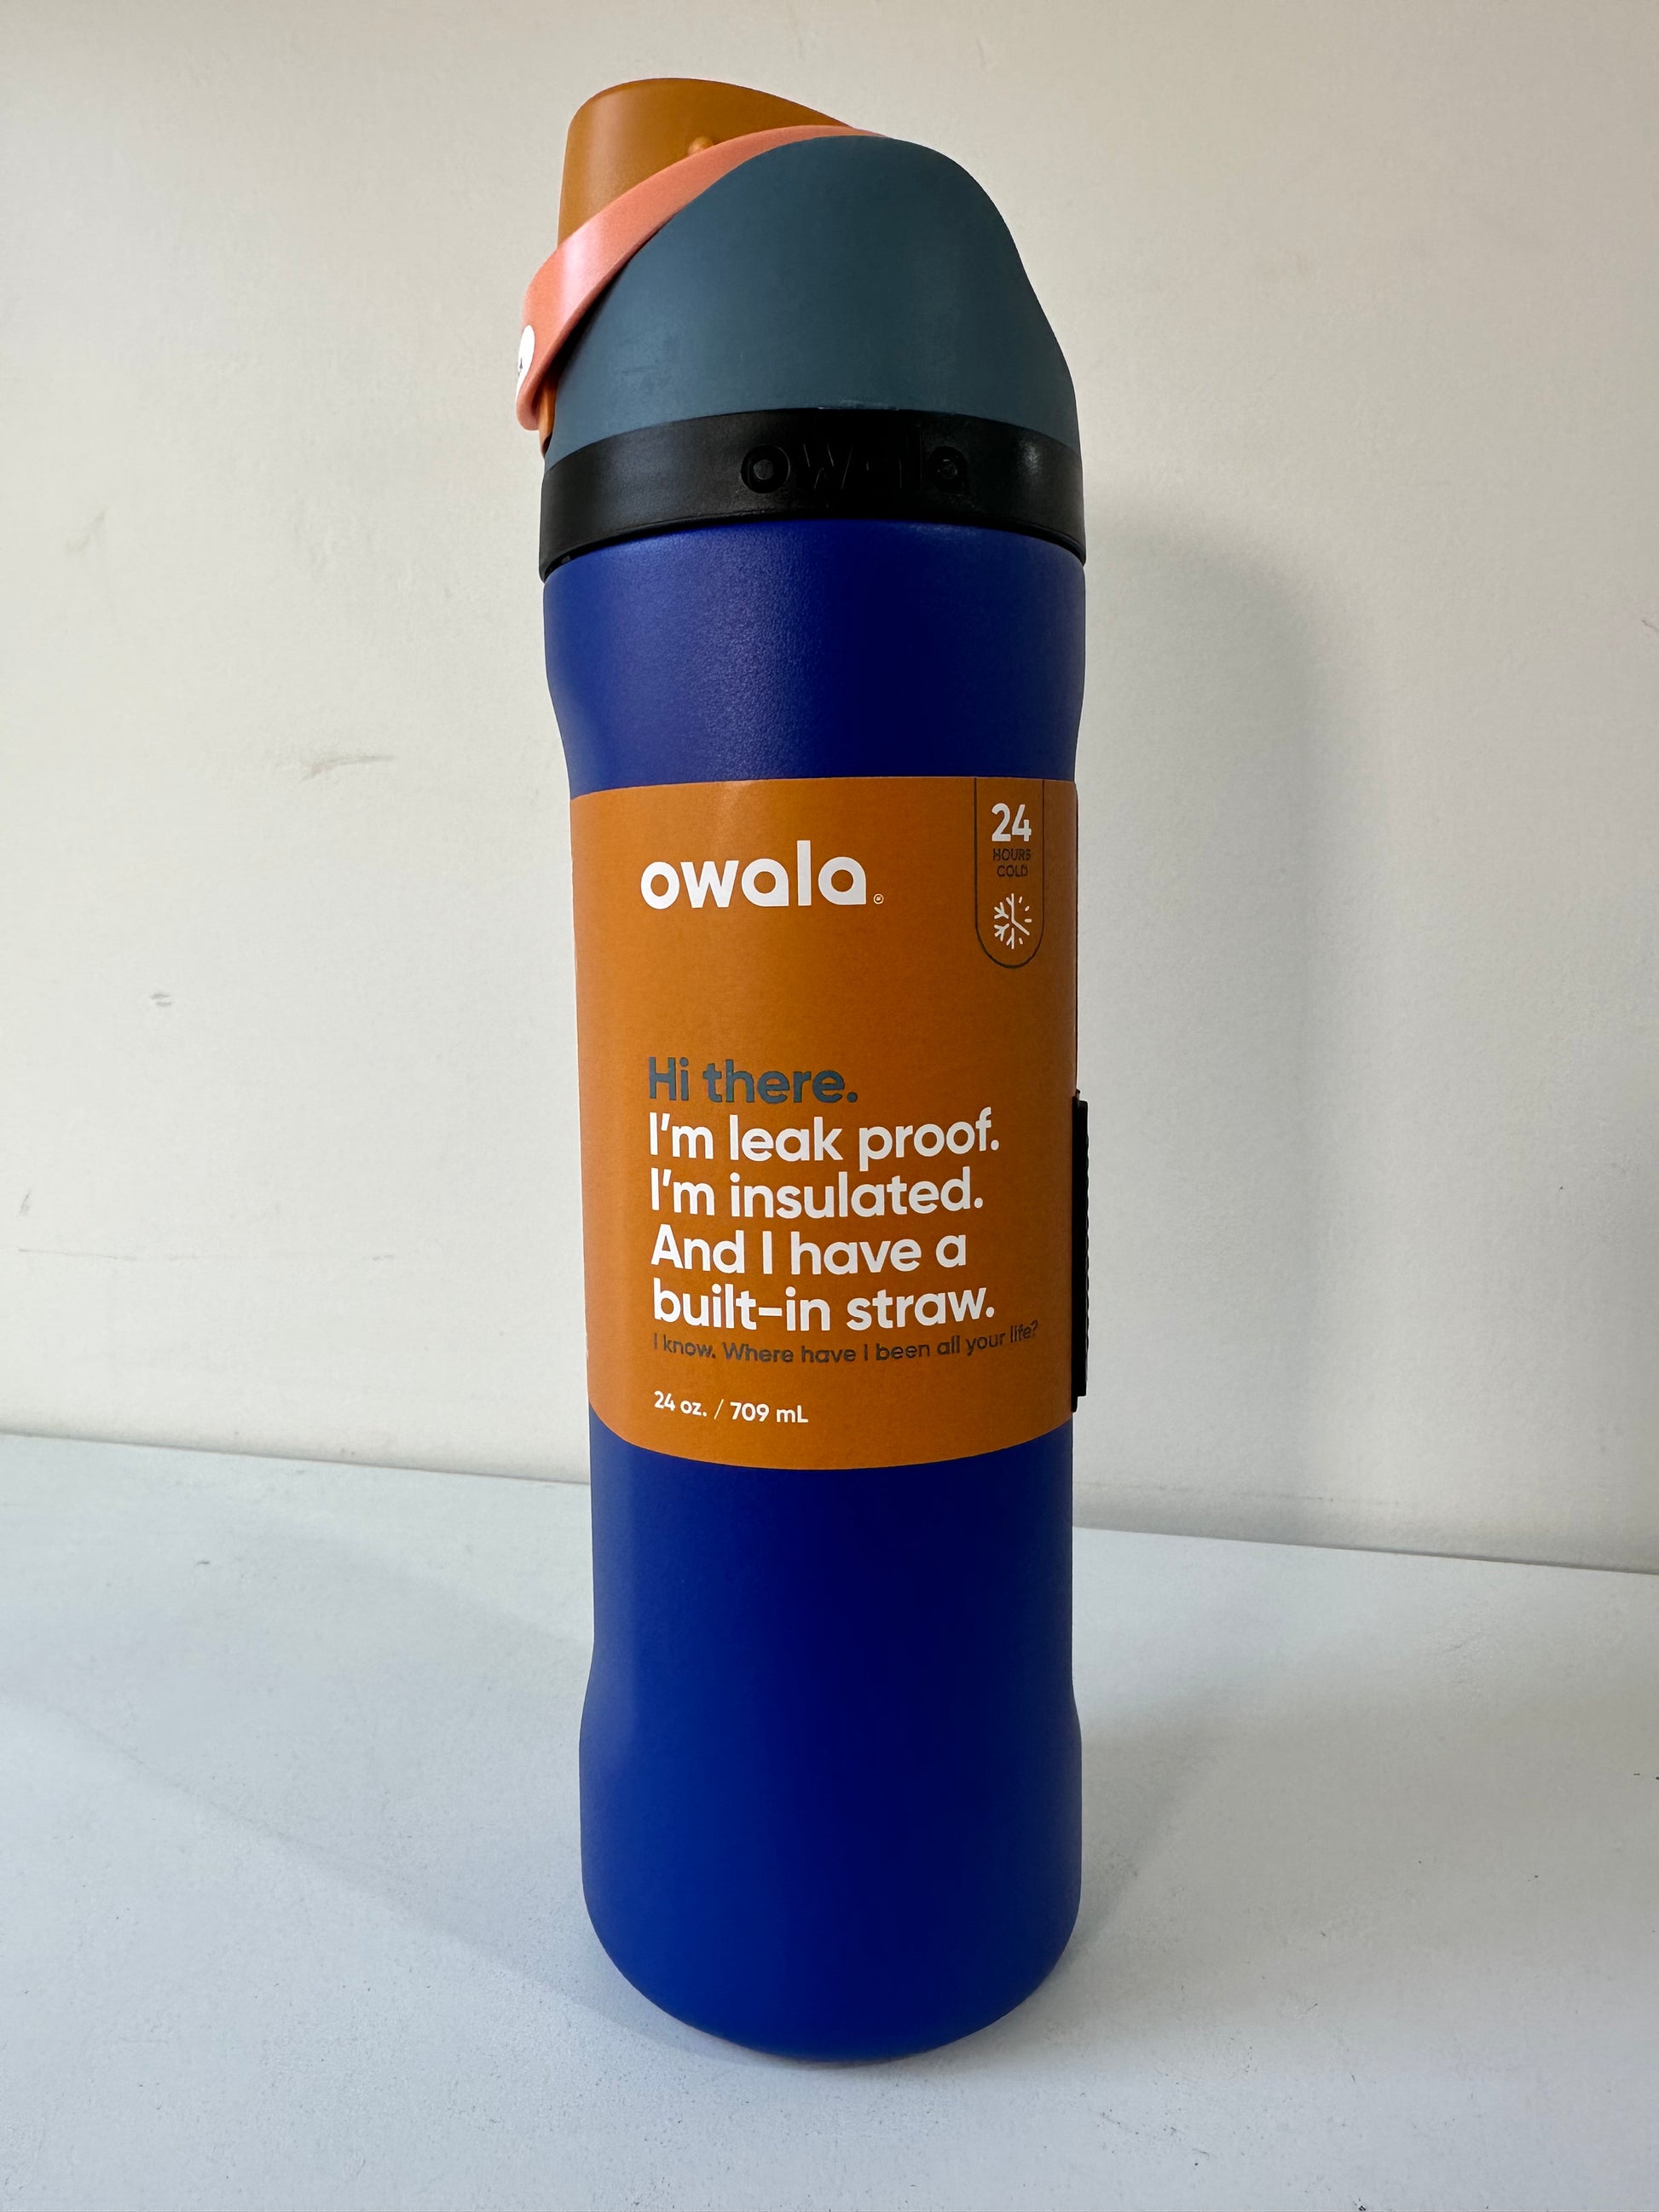 Personalized Owala 24 Oz Freesip Water Bottle Leak Proof Built in